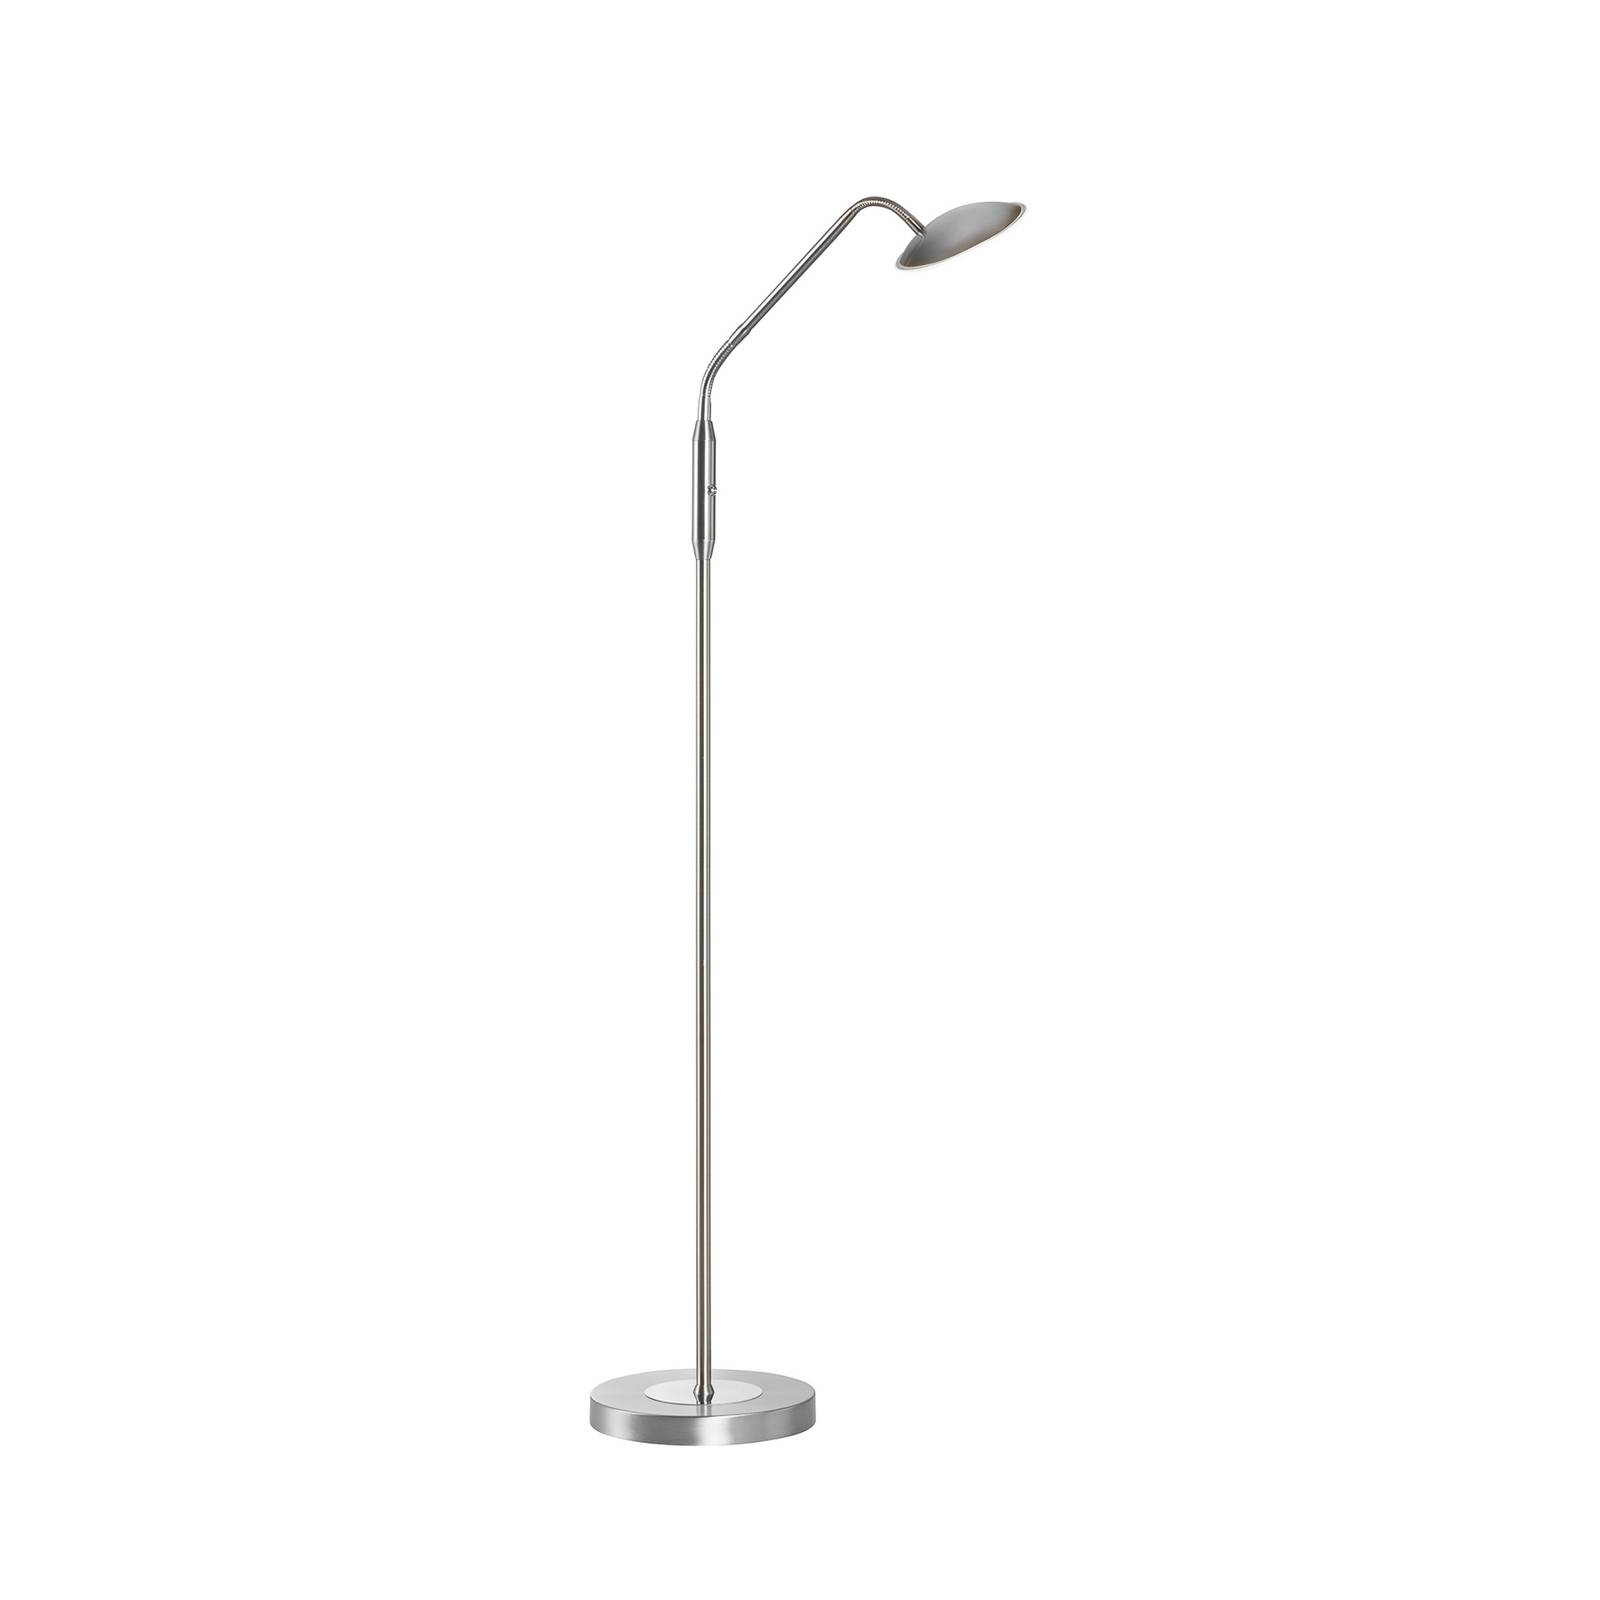 LED stojacia lampa Tallri, niklová farba, výška 135 cm, CCT